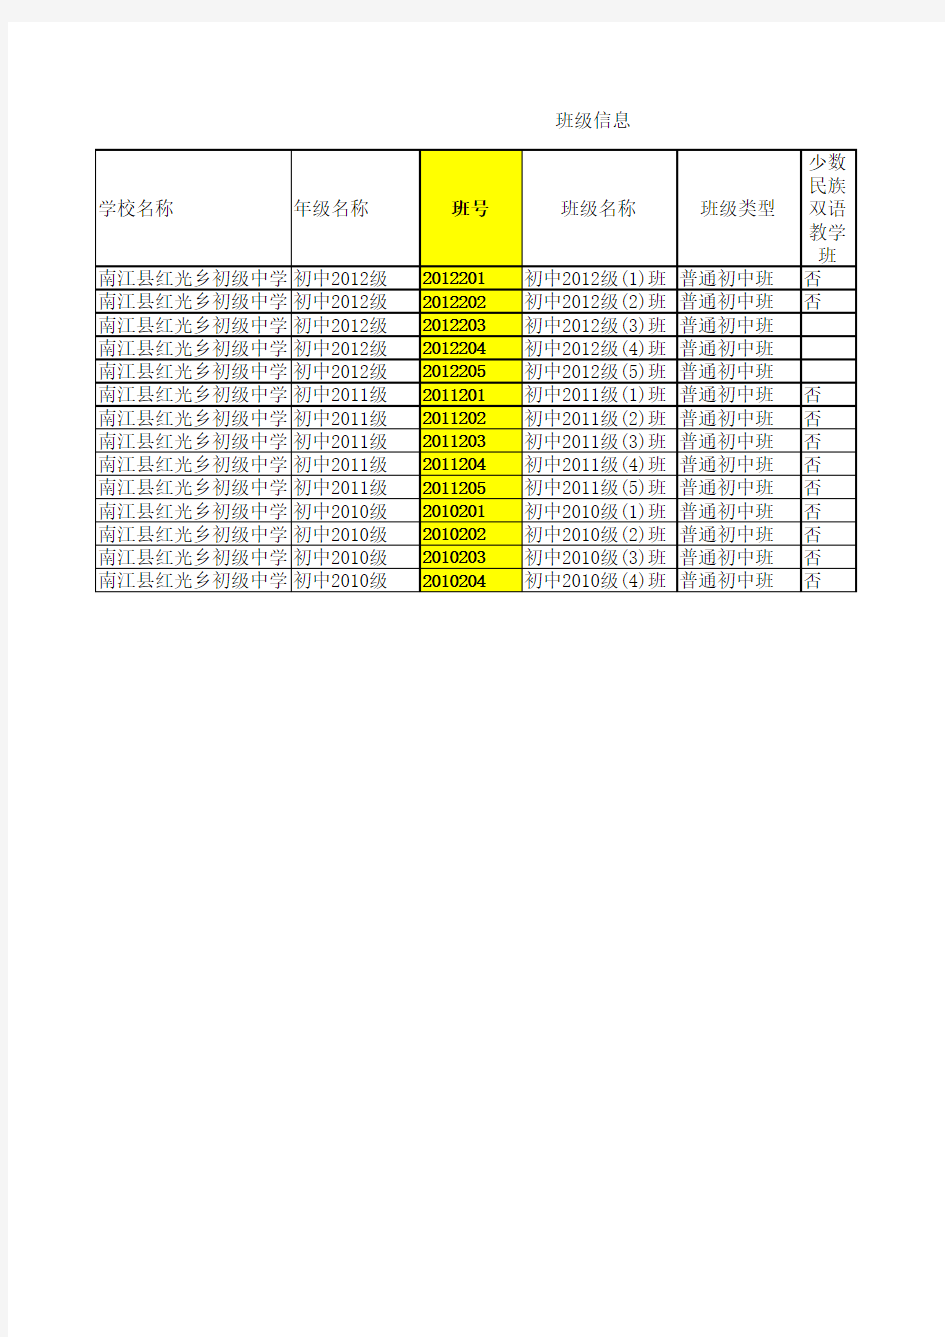 学校机构地址代码、基本信息表20121007